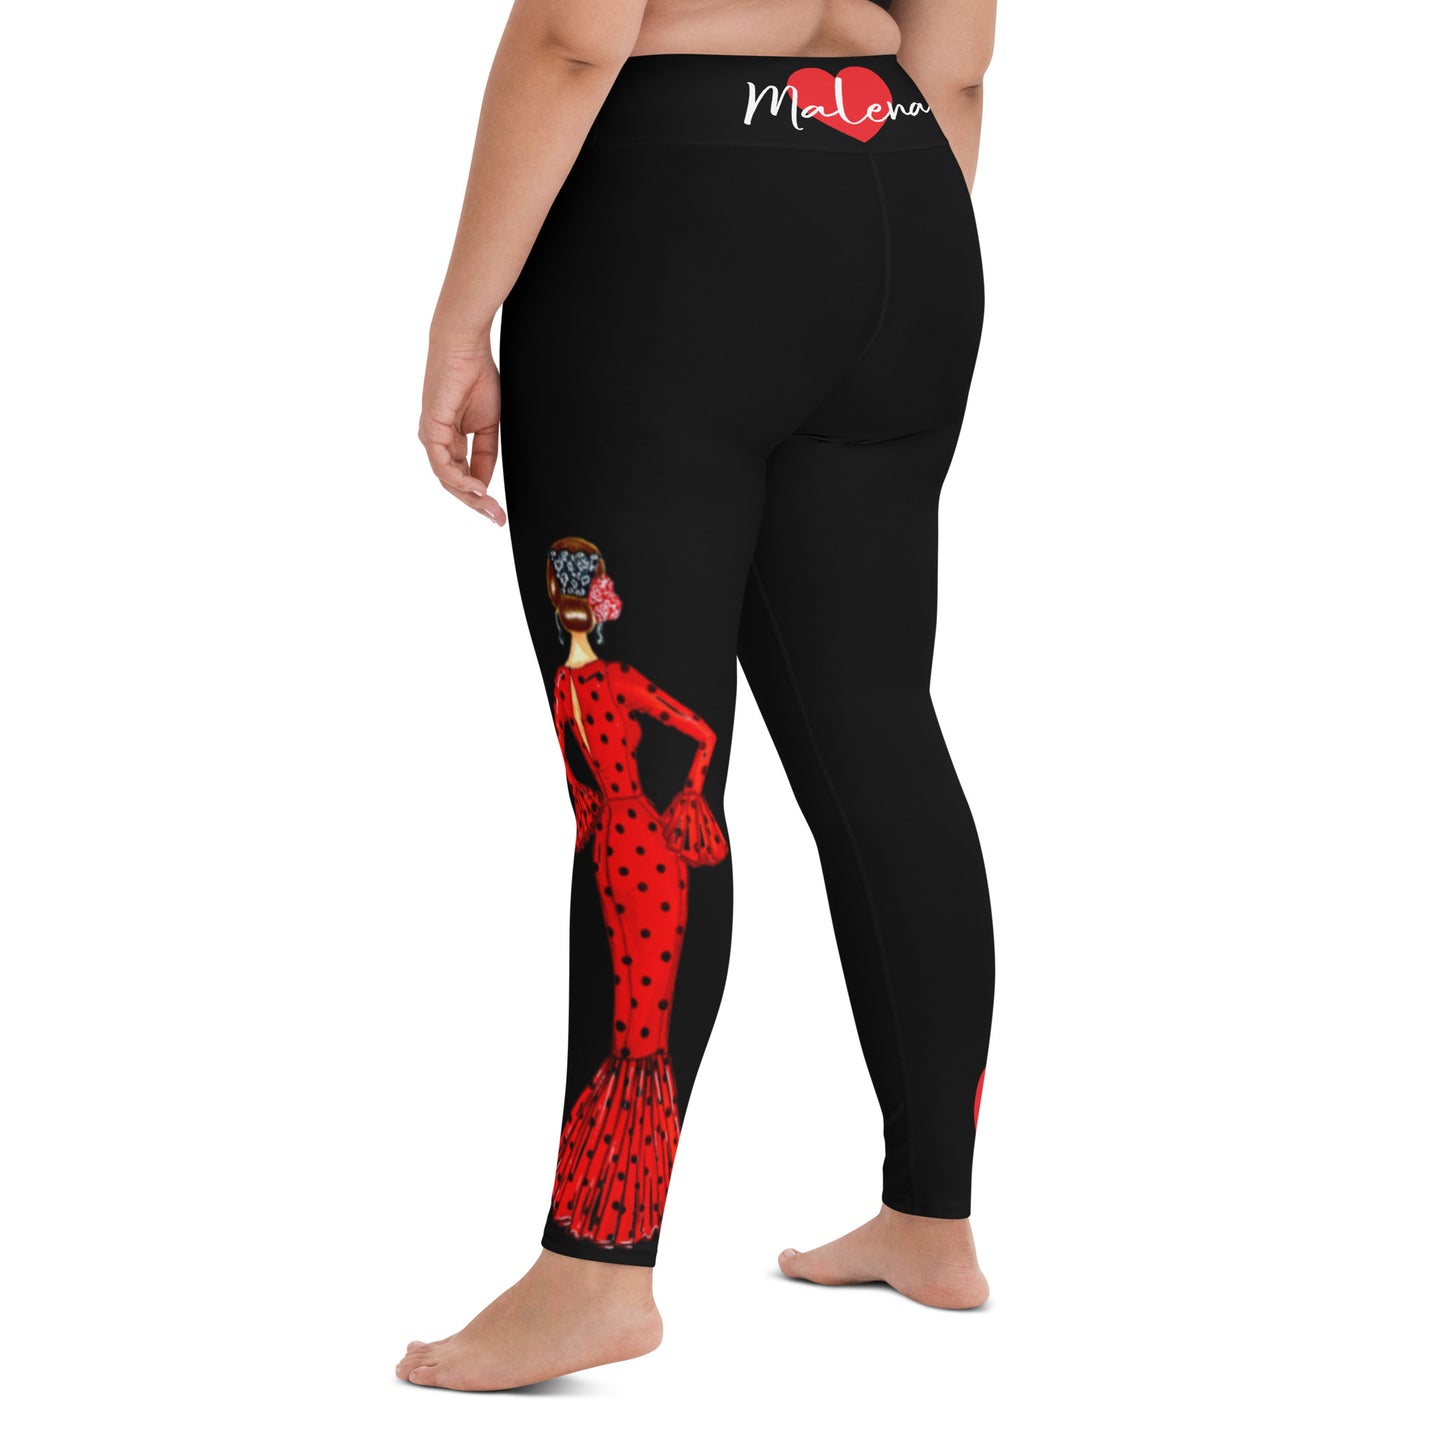 Flamenco Dancer Leggings, black high waisted yoga leggings with brunette dancer in a red dress and red heart design - IllustrArte